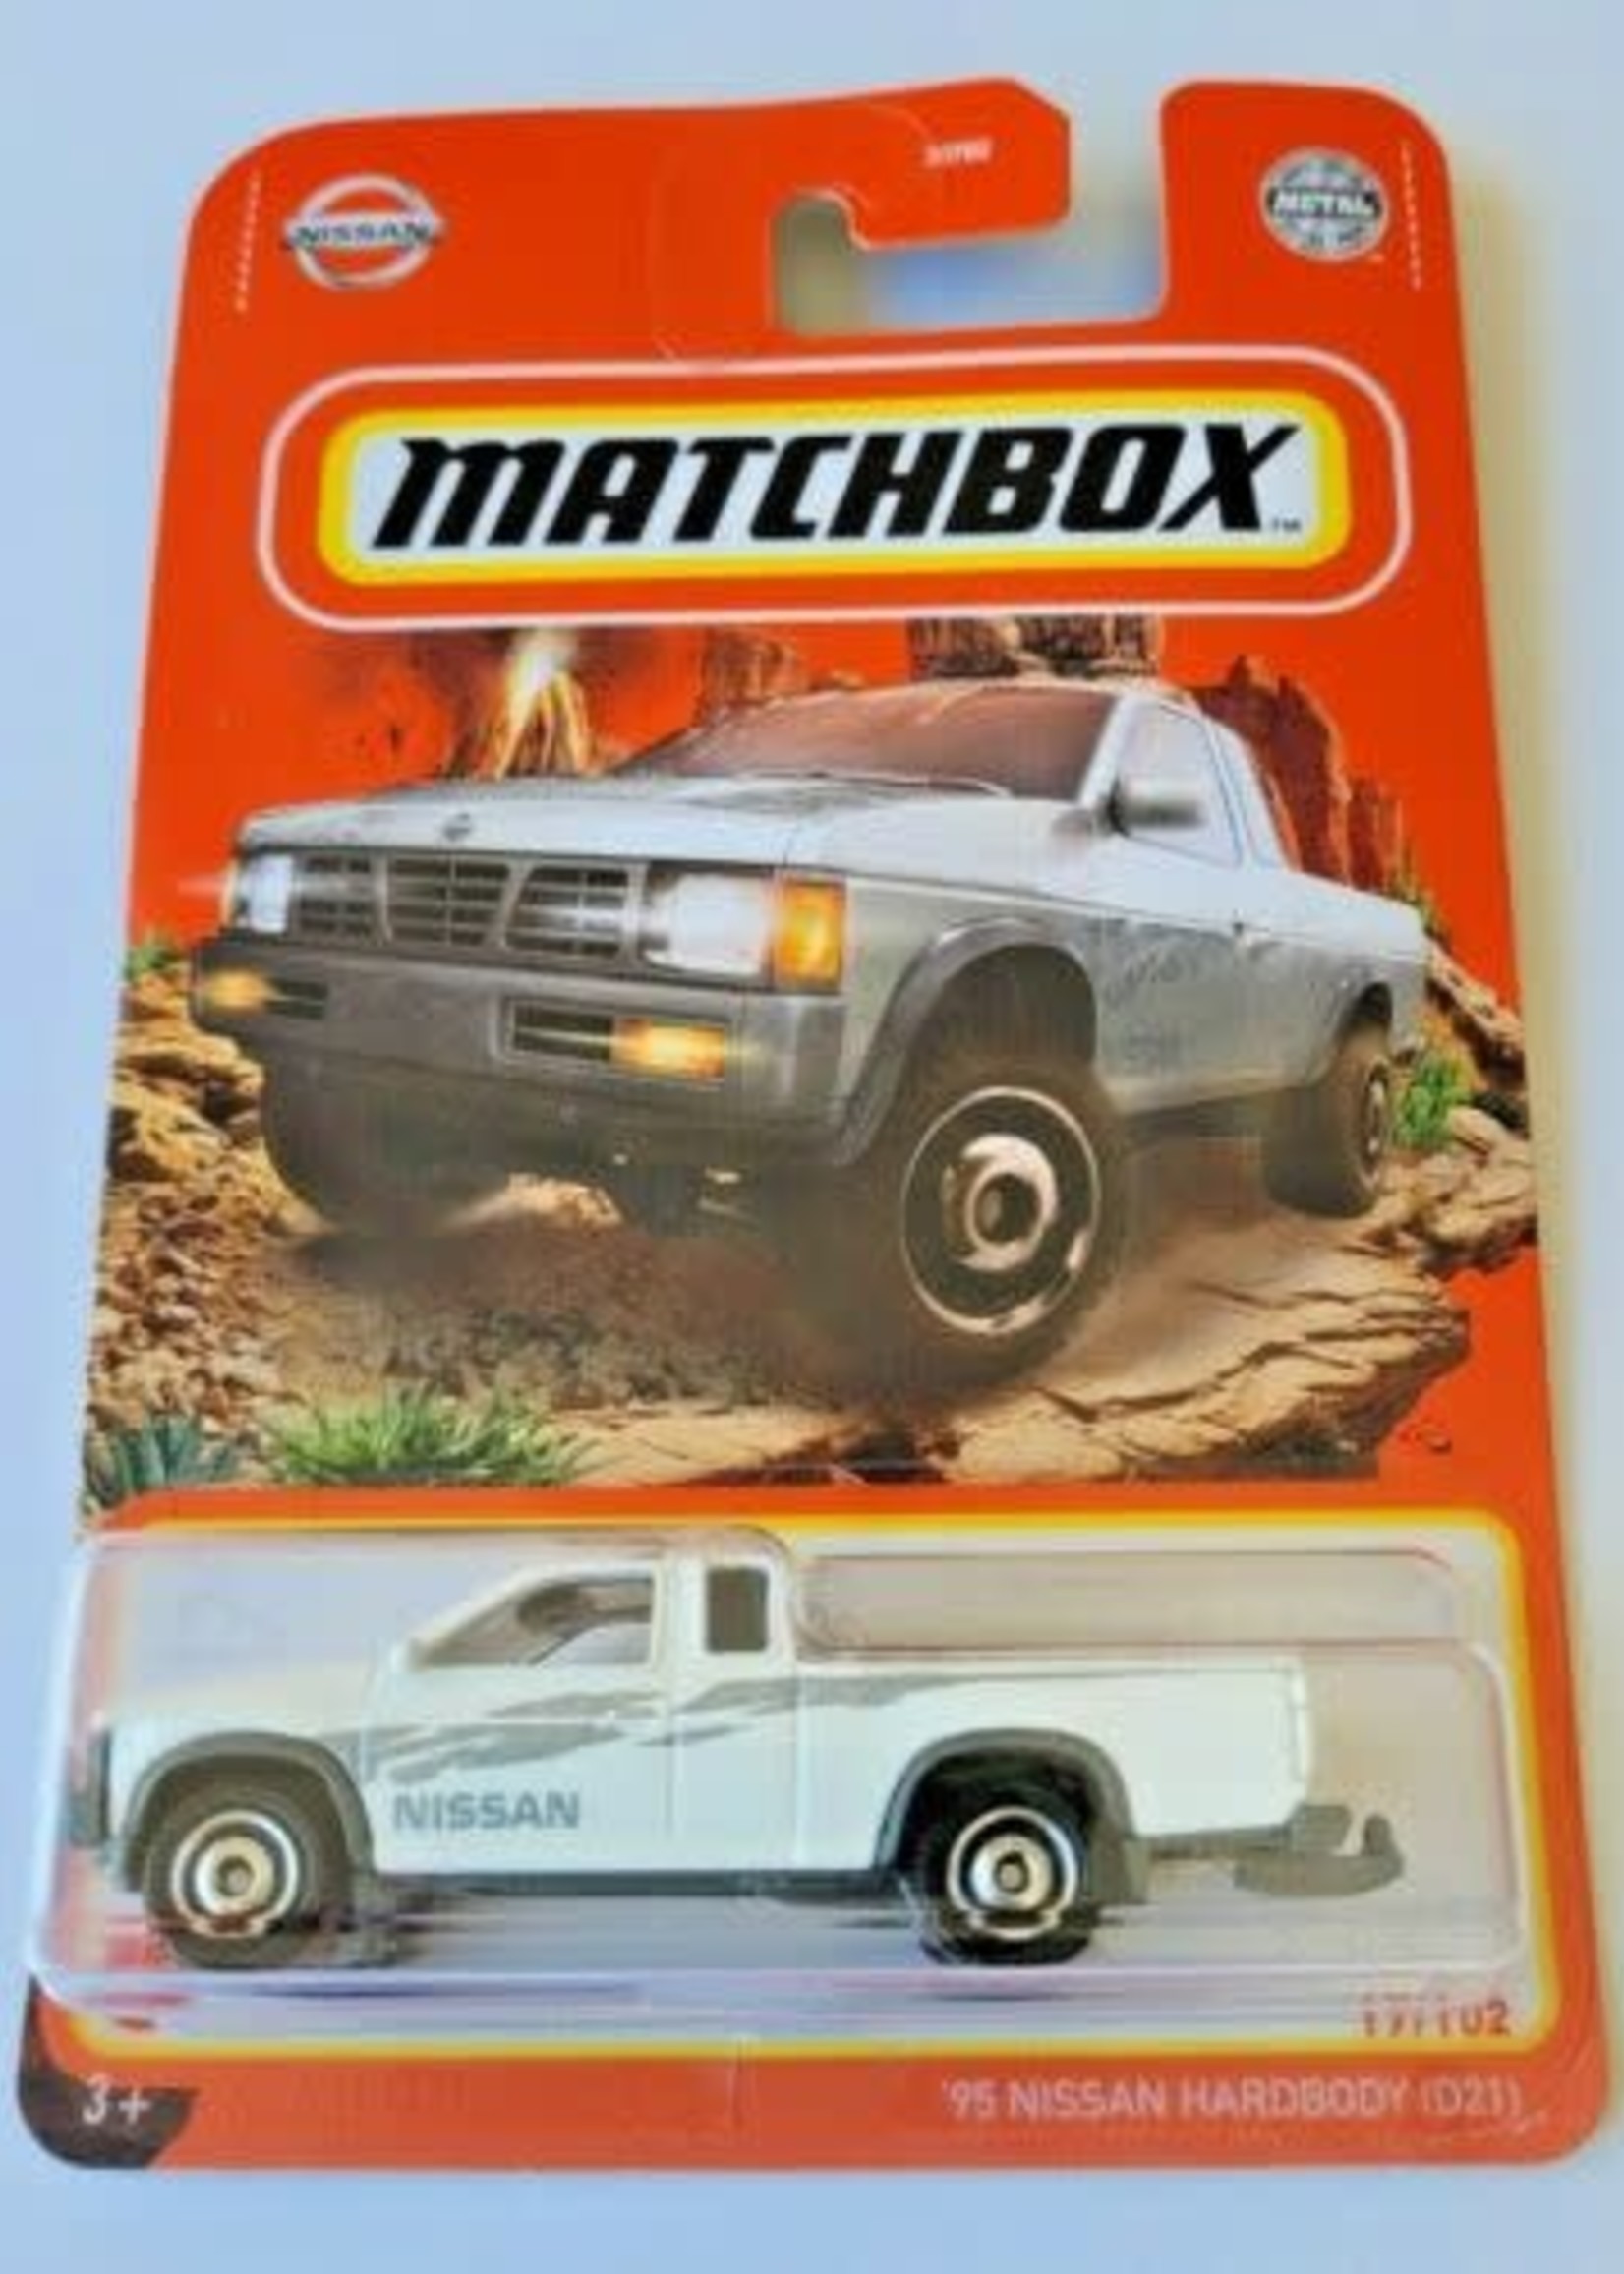 Mattel Matchbox Car: '95 Nissan Hardbody (D21)